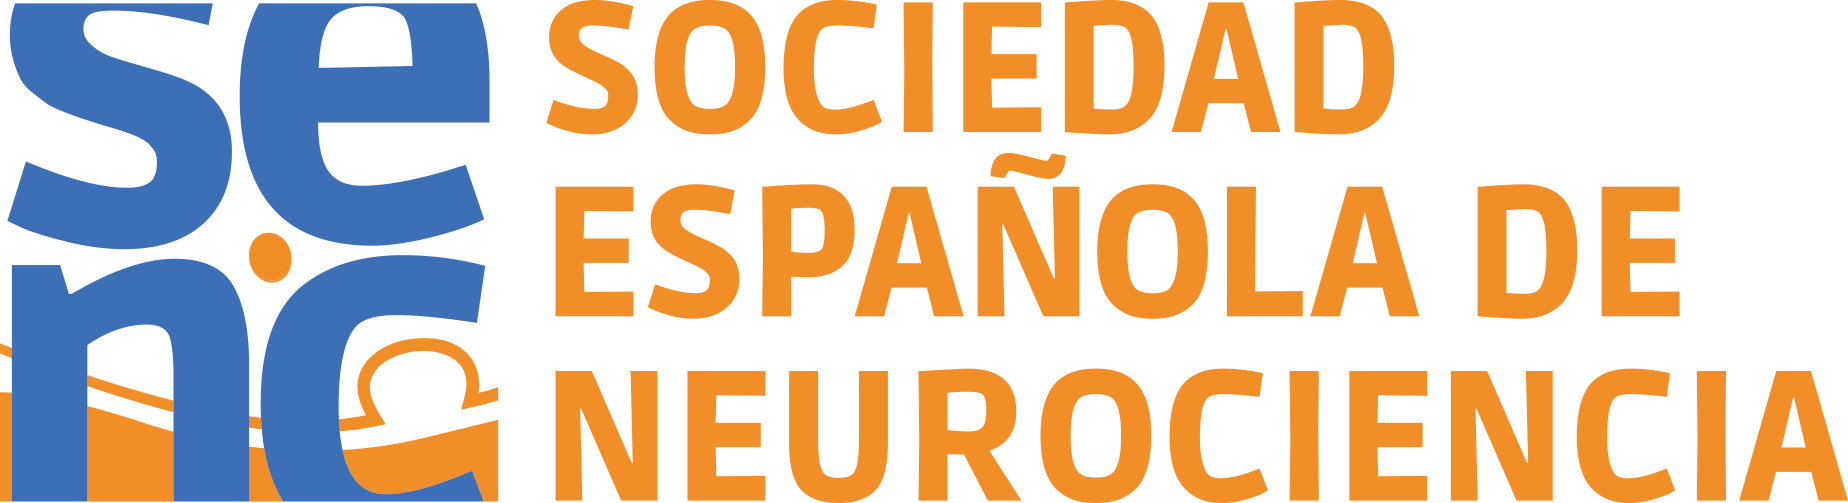 Sociedad Española de Neurociencia.png